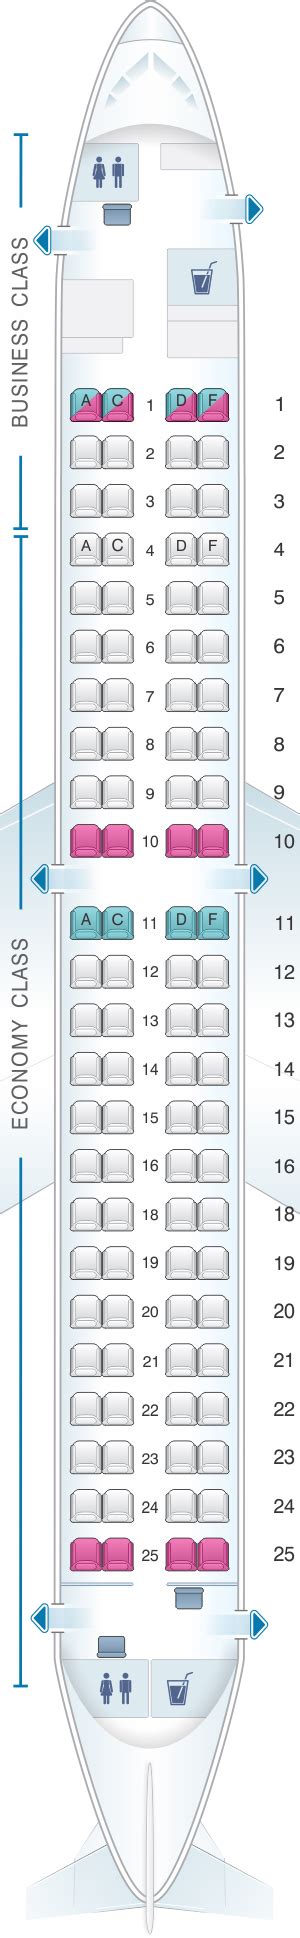 Airbus A Seat Map Finnair Elcho Table